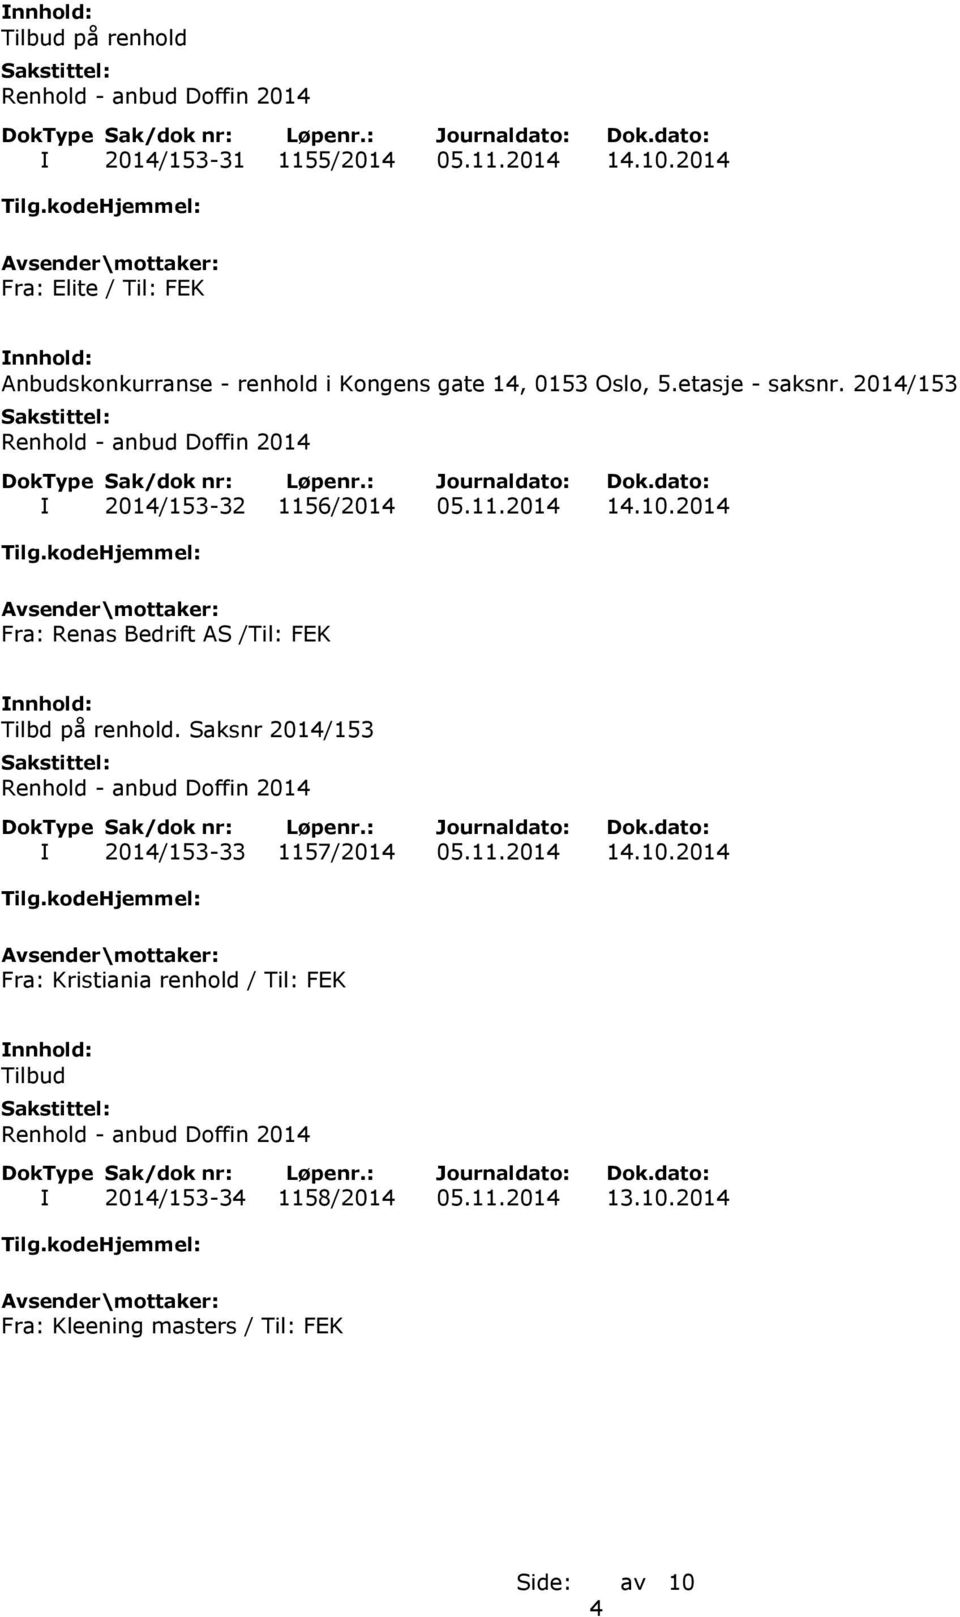 2014/153 I 2014/153-32 1156/2014 05.11.2014 14.10.2014 Fra: Renas Bedrift AS /Til: FEK Tilbd på renhold.